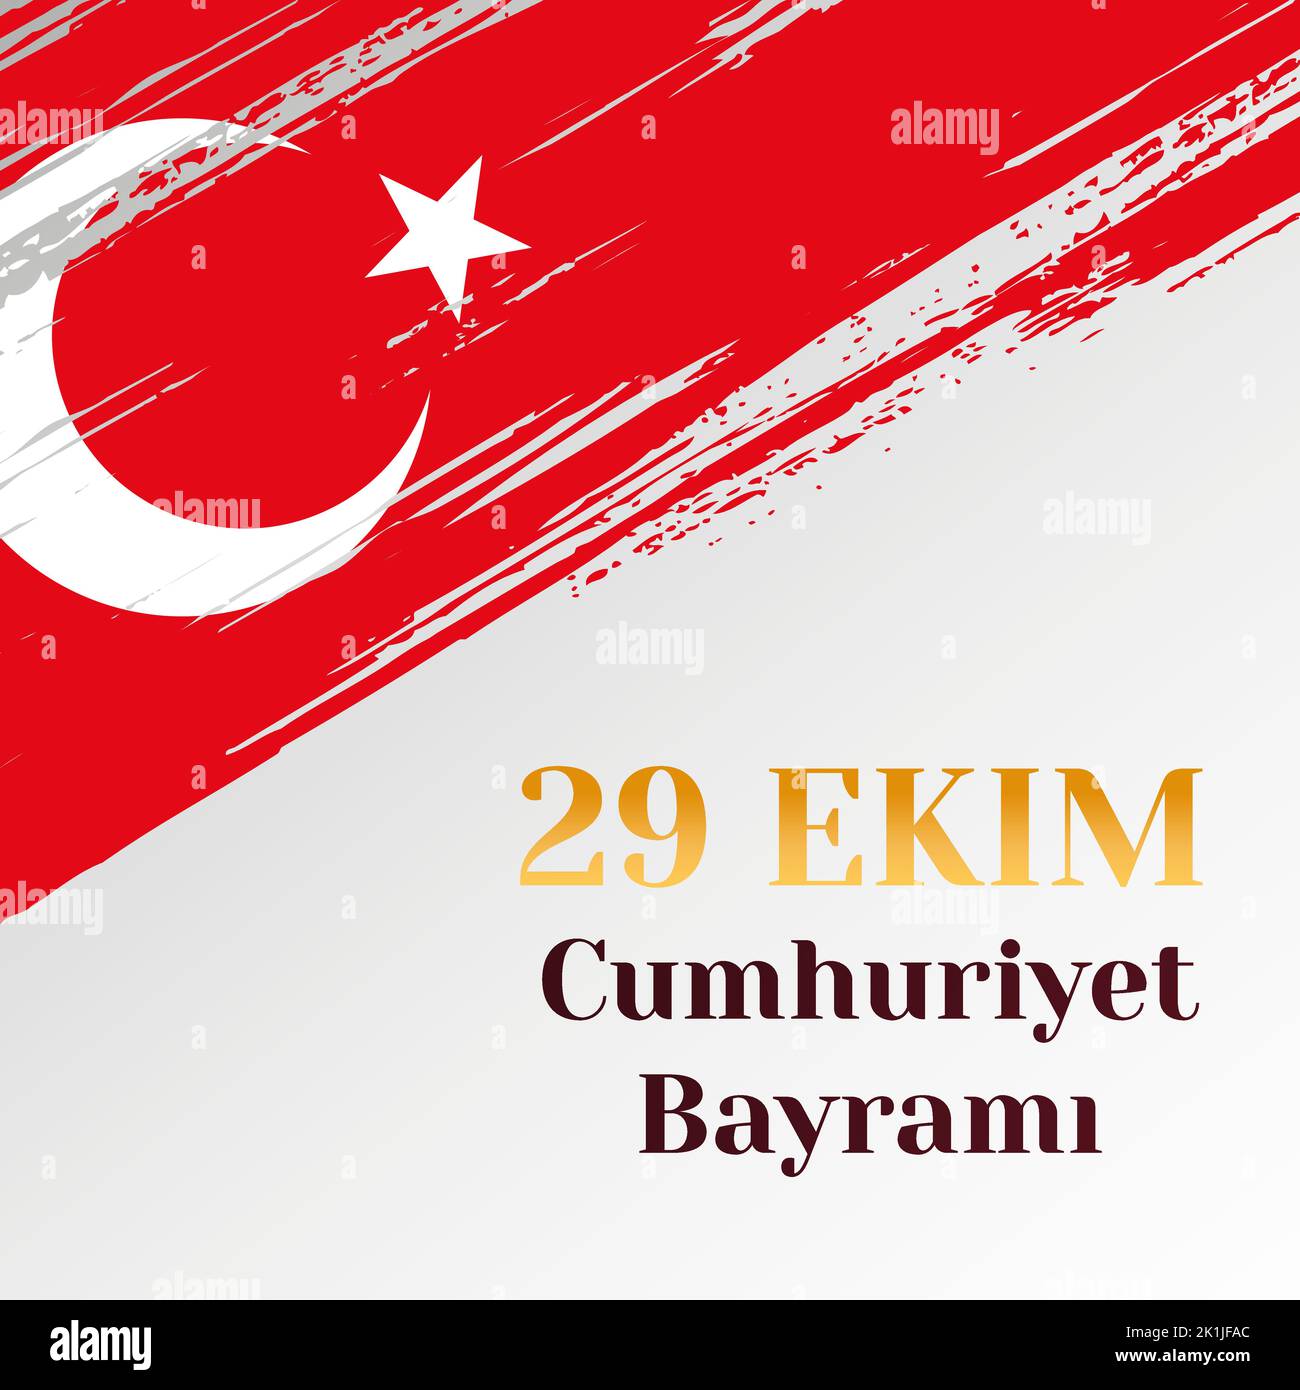 29 ekim cumhuriyet bayrami, turkish republic day illustration Stock Vector